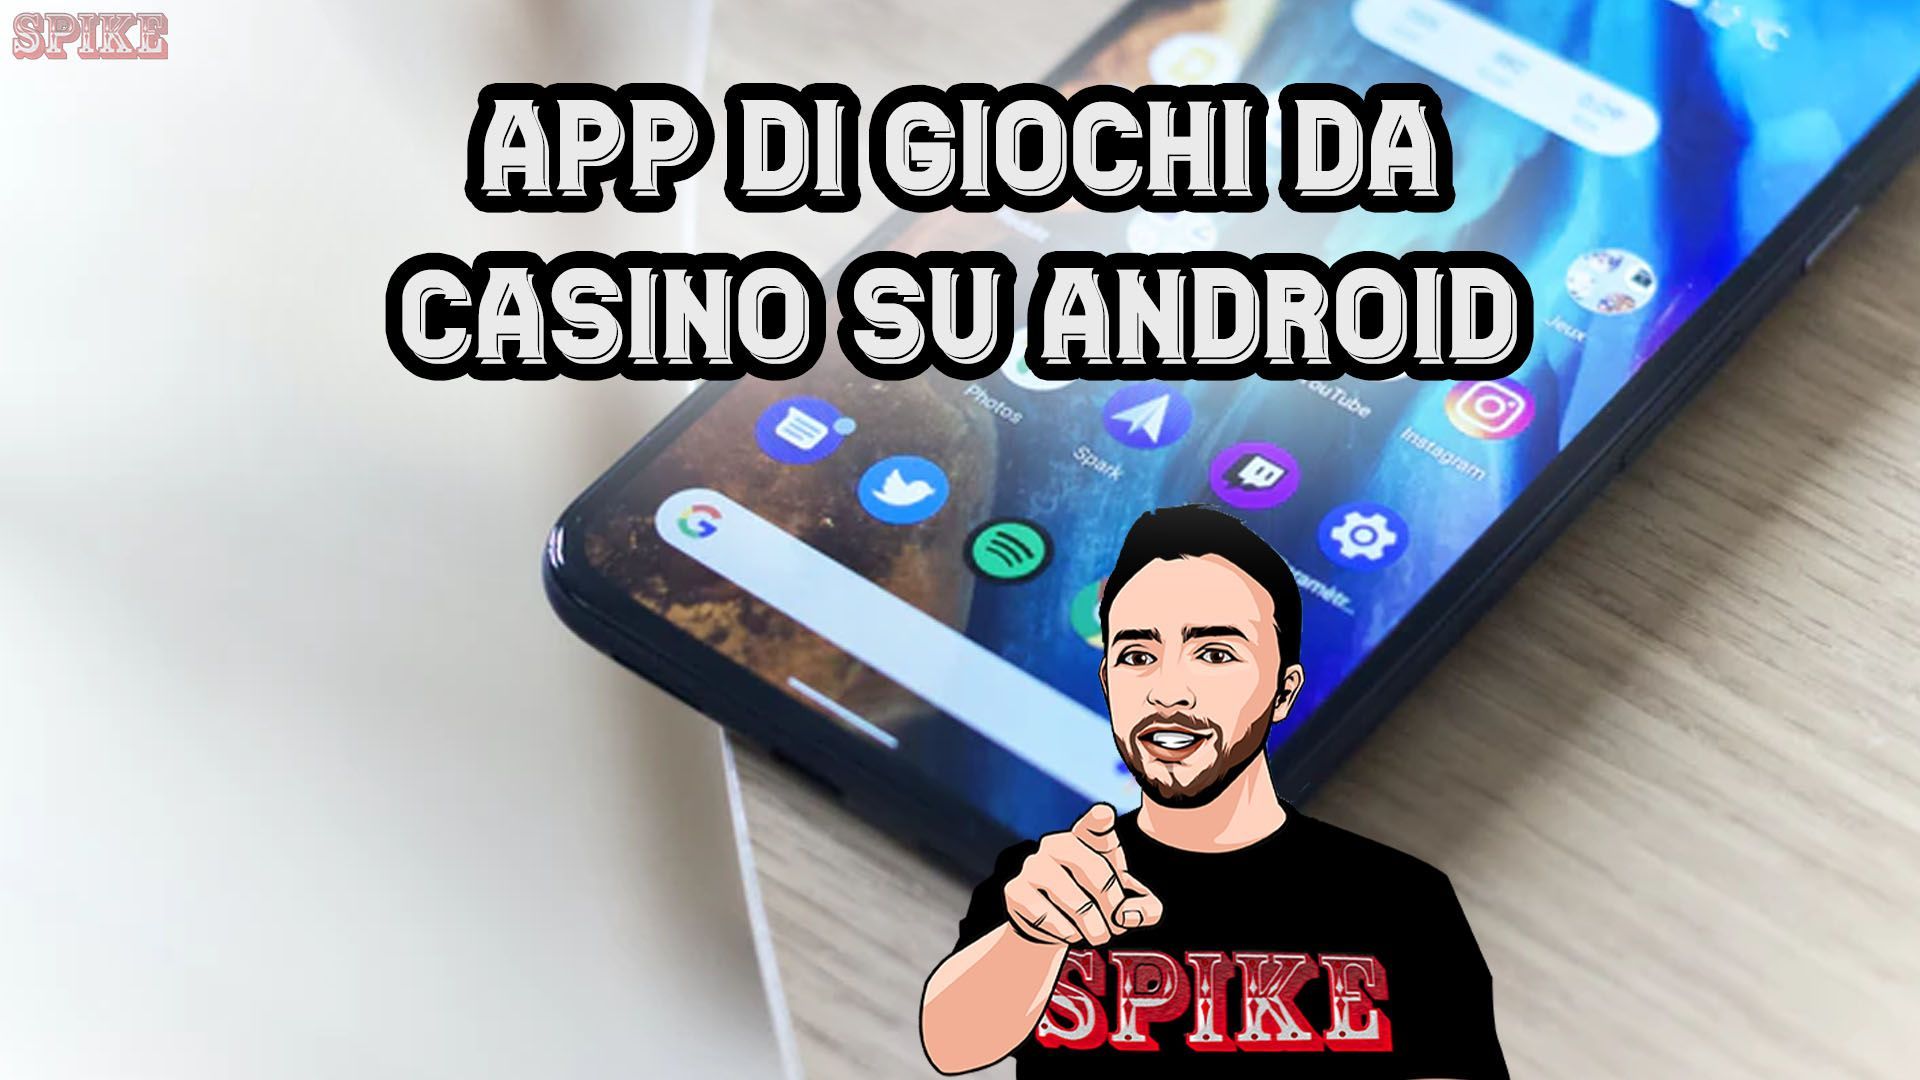 Gli Utilizzatori Di Android Possono Scaricare Le Applicazioni Dei Giochi Da Casino Su Google Play Card